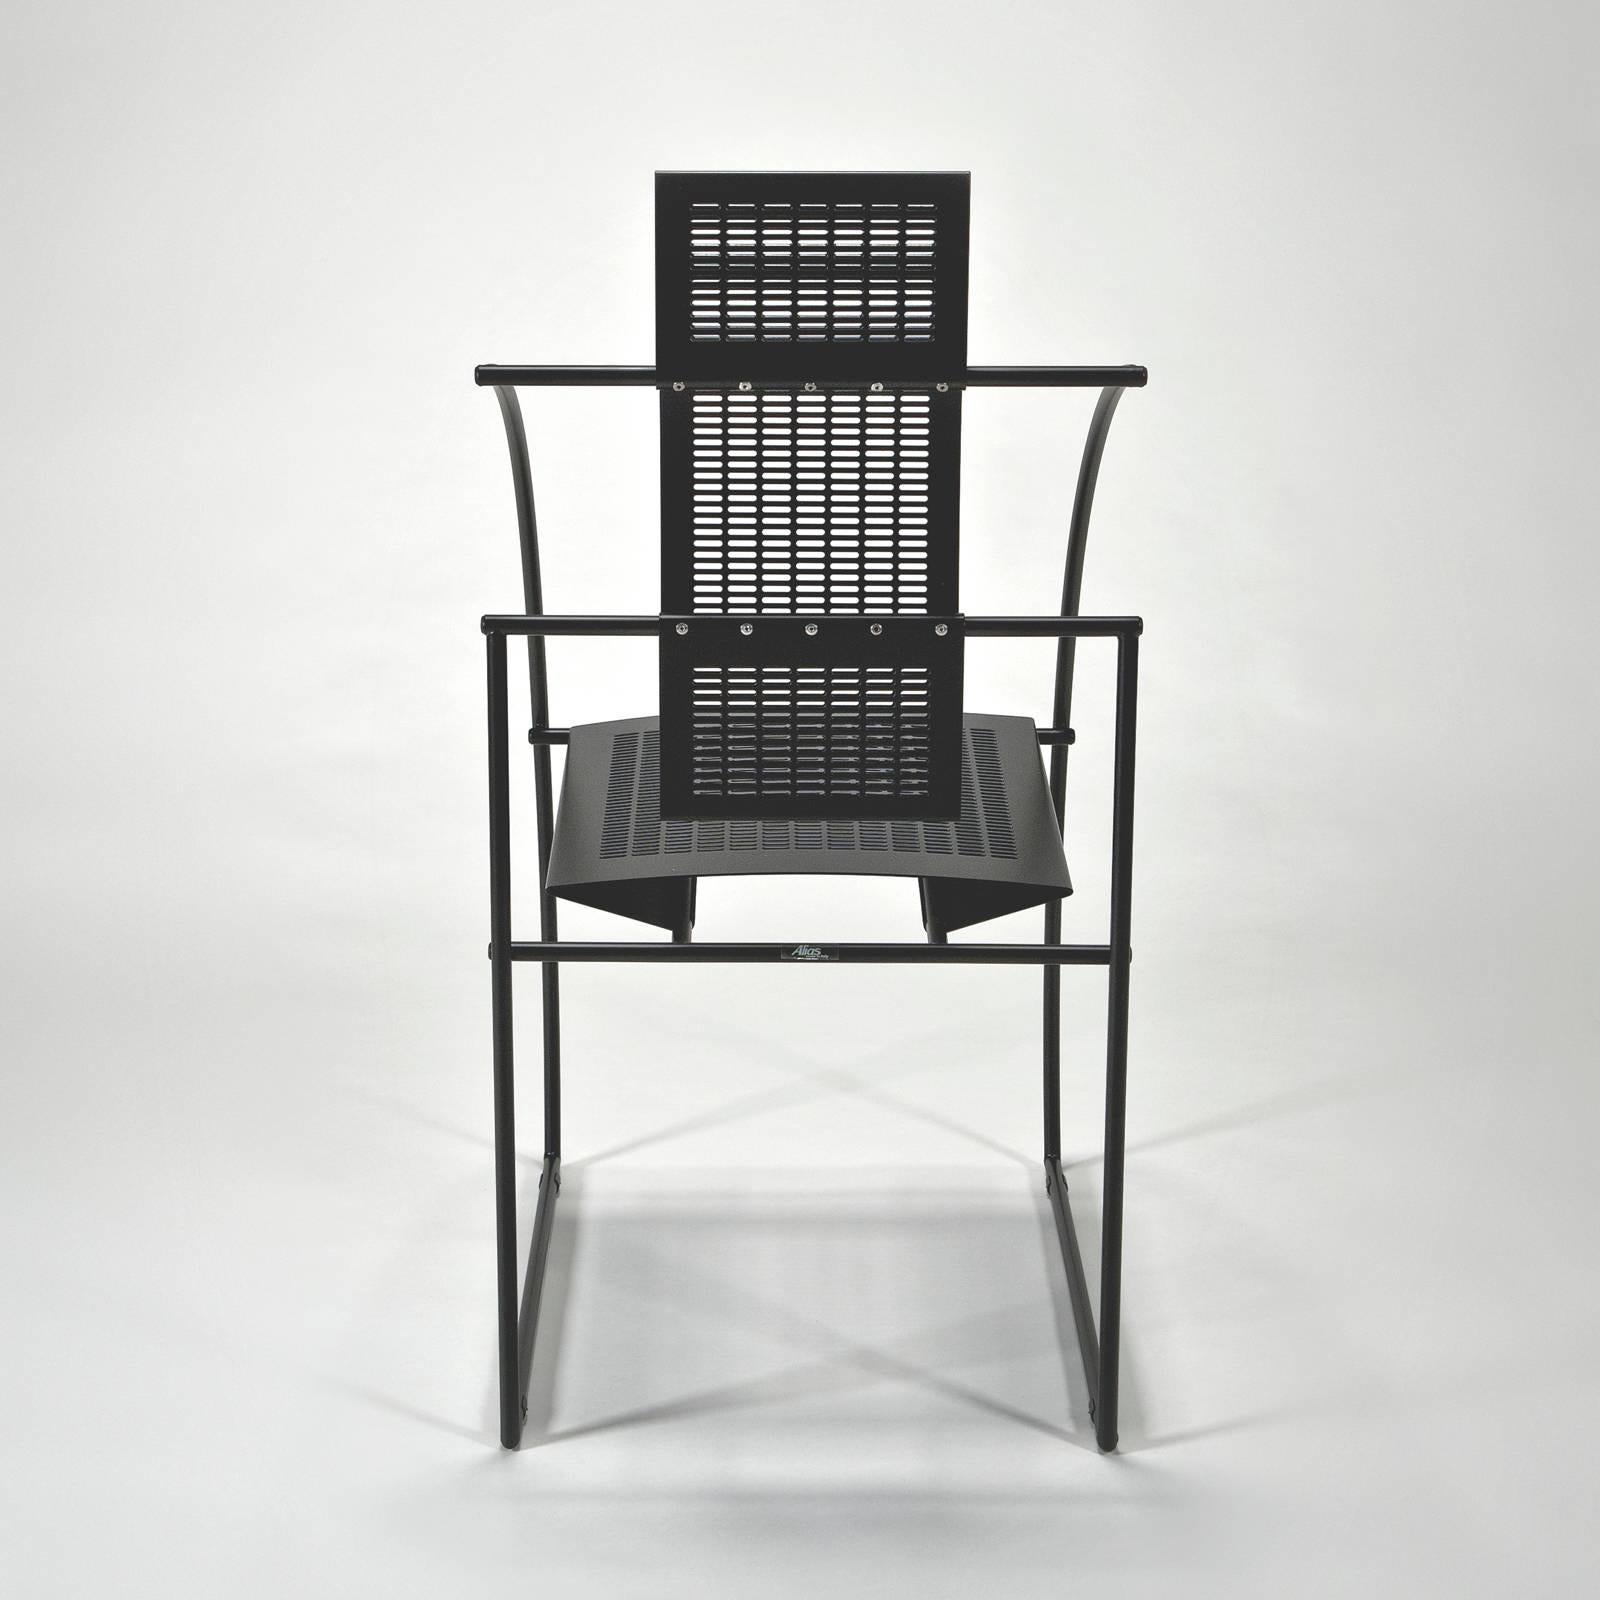 Post-Modern Quinta Chair by Mario Botta for Alias